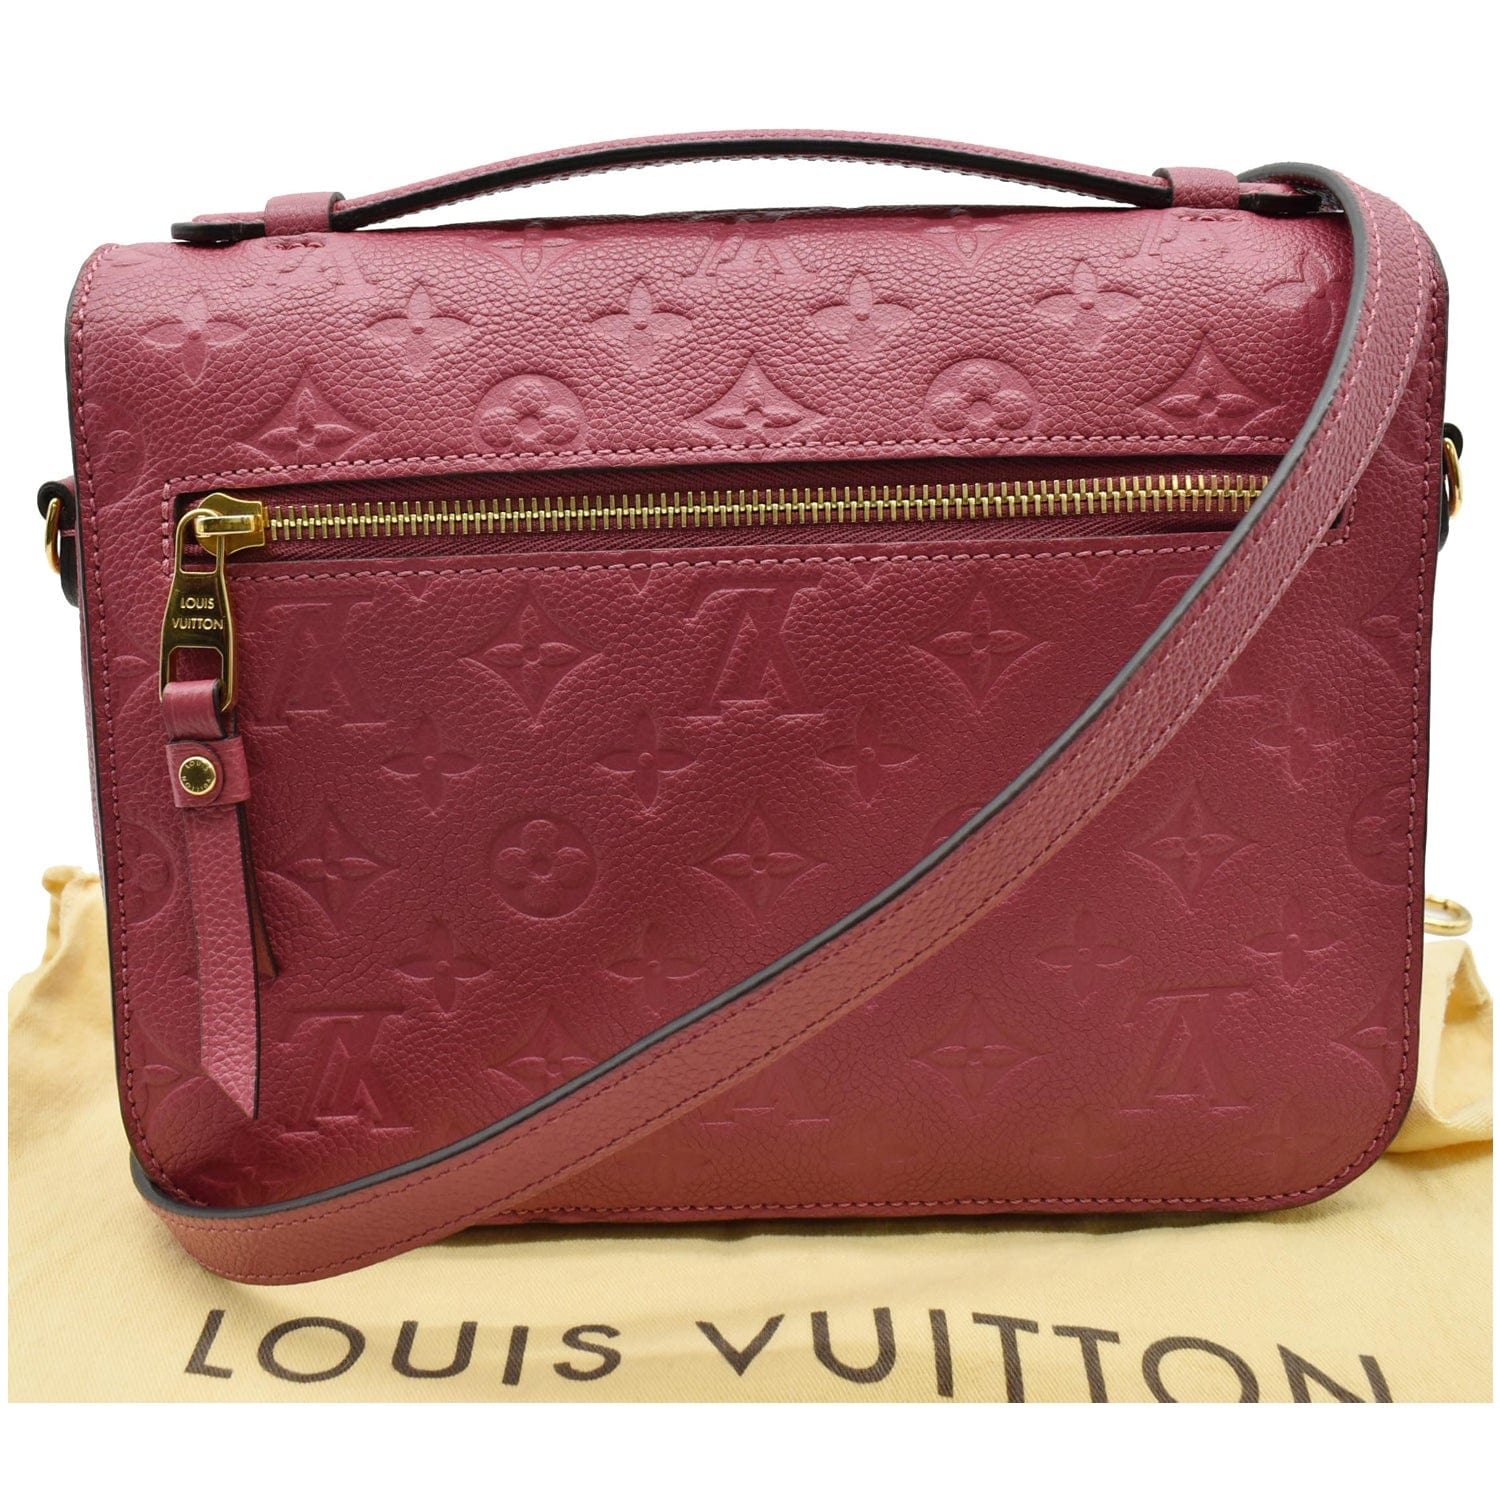 Louis Vuitton Pochette Metis Monogram Empreinte Leather Beige Rose